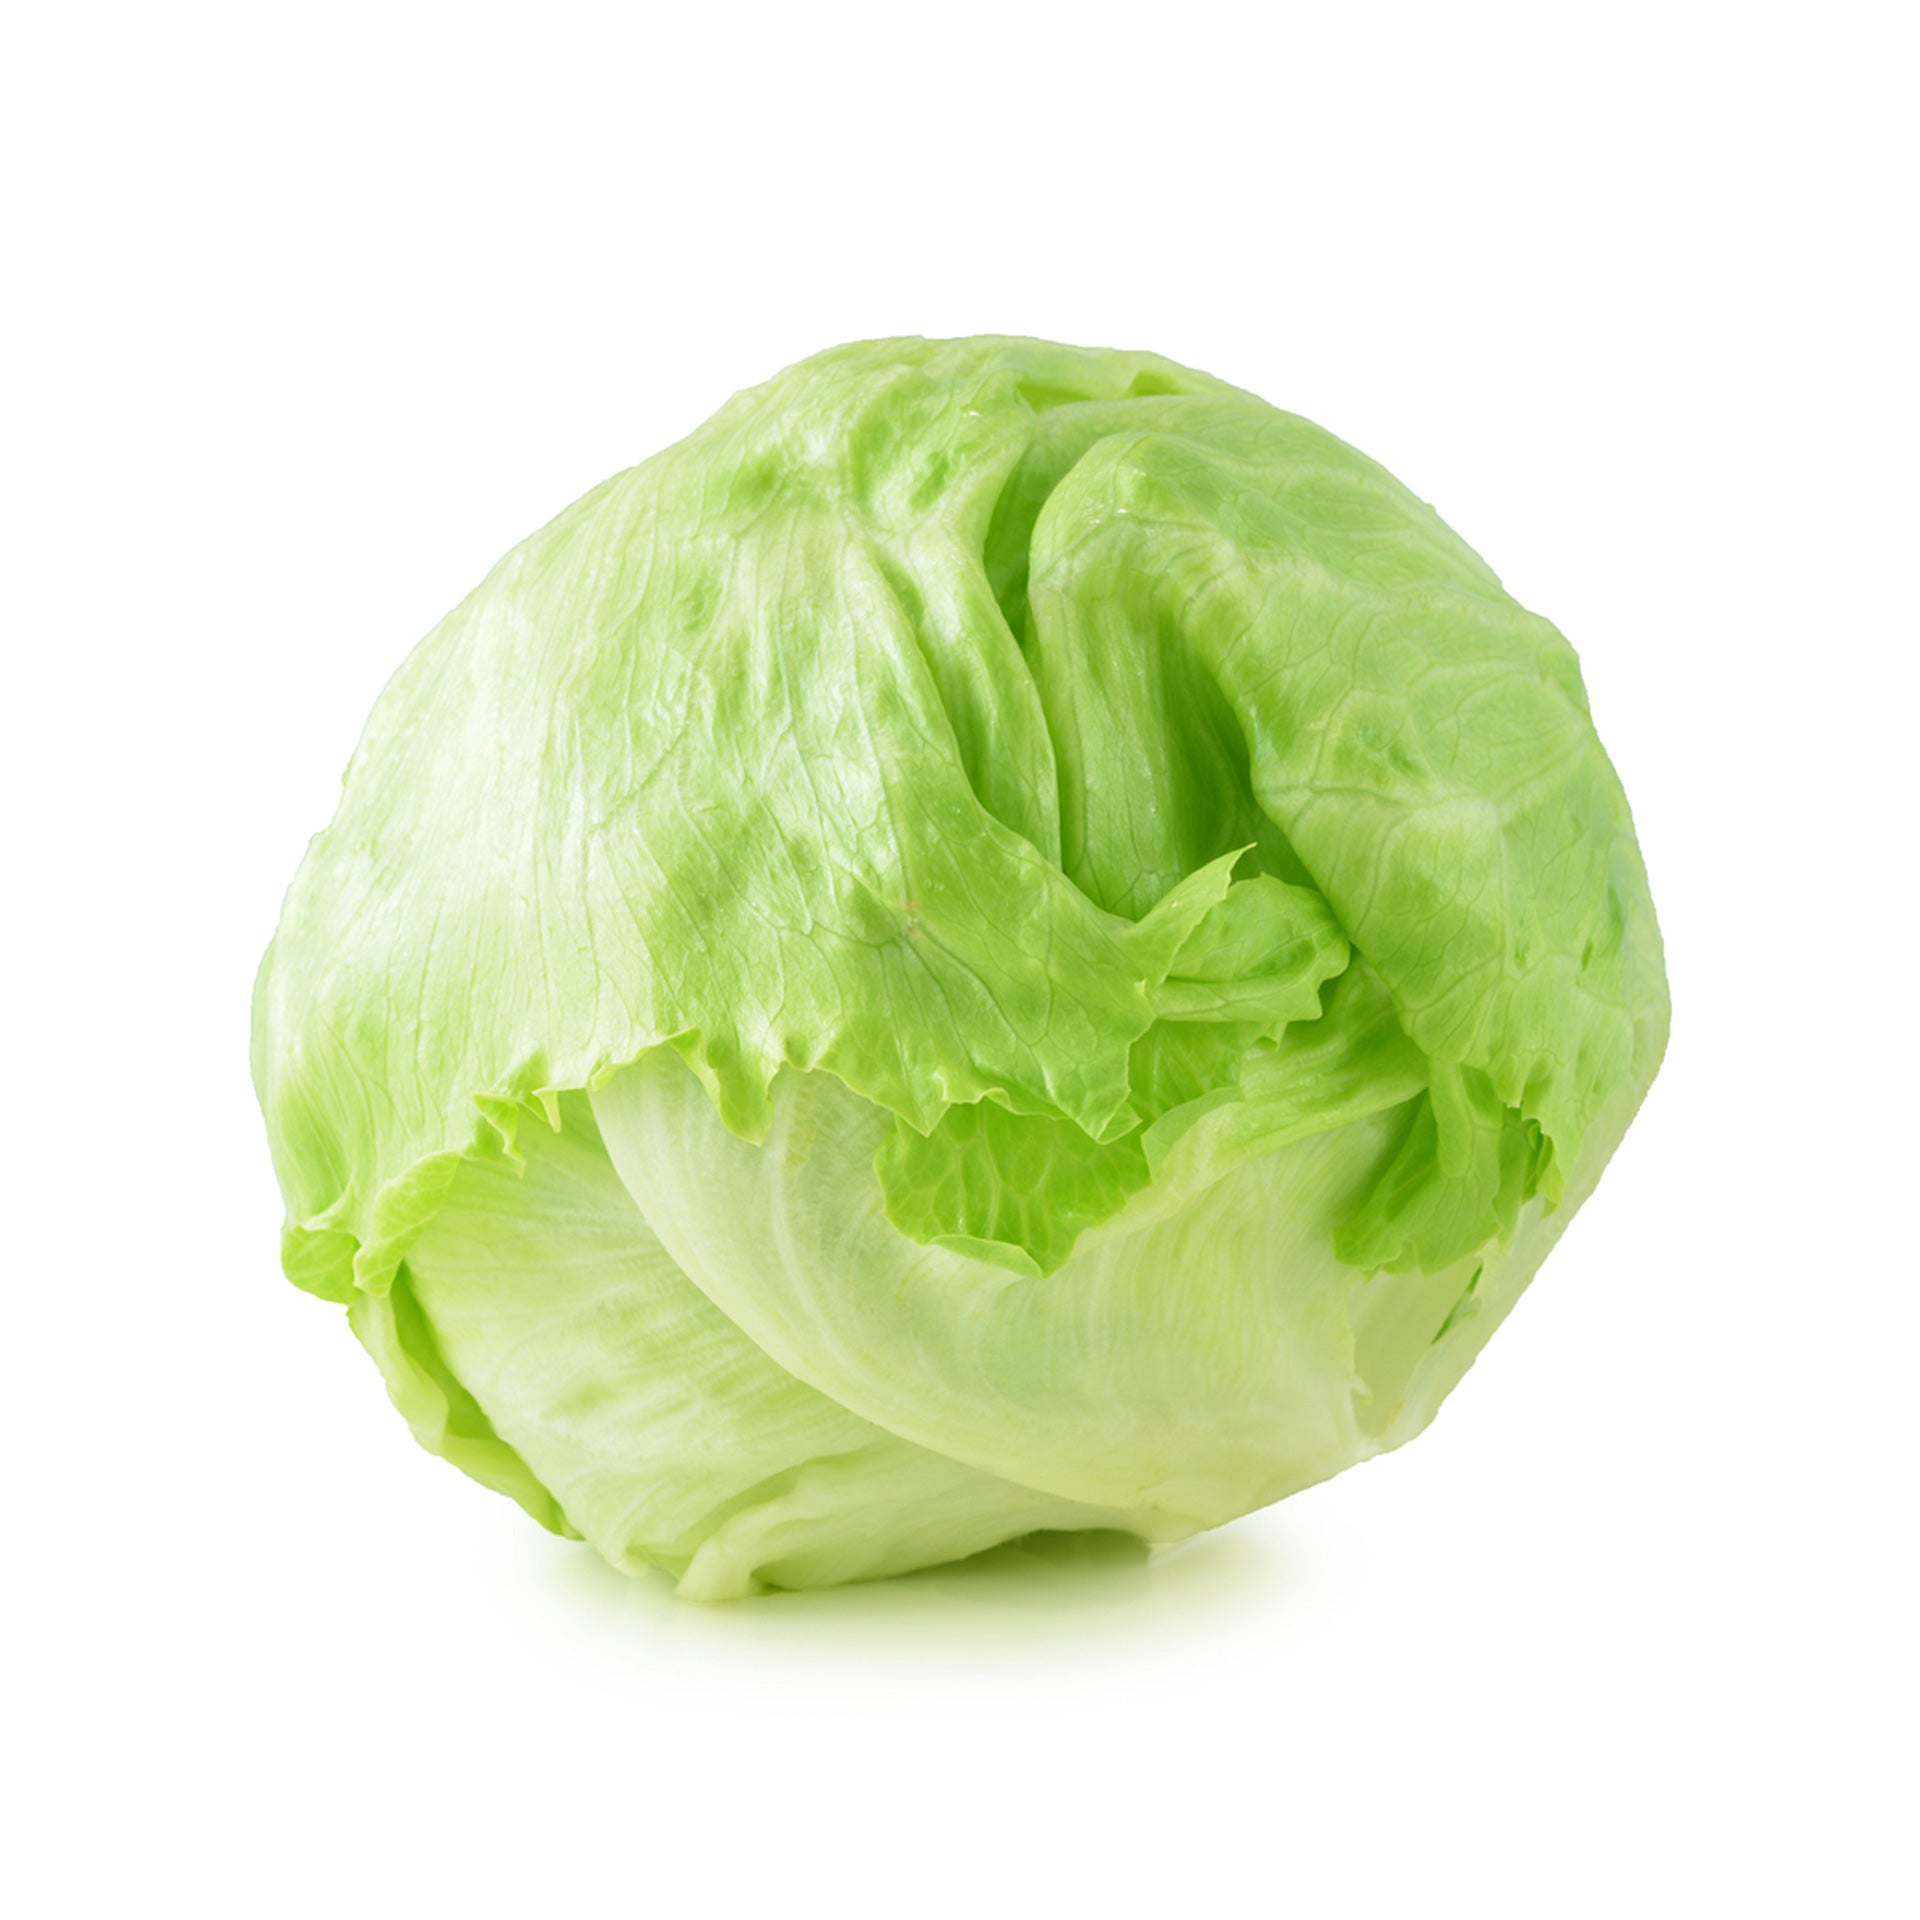 lettuce-iceberg_2048x2048.jpg?v=16261171